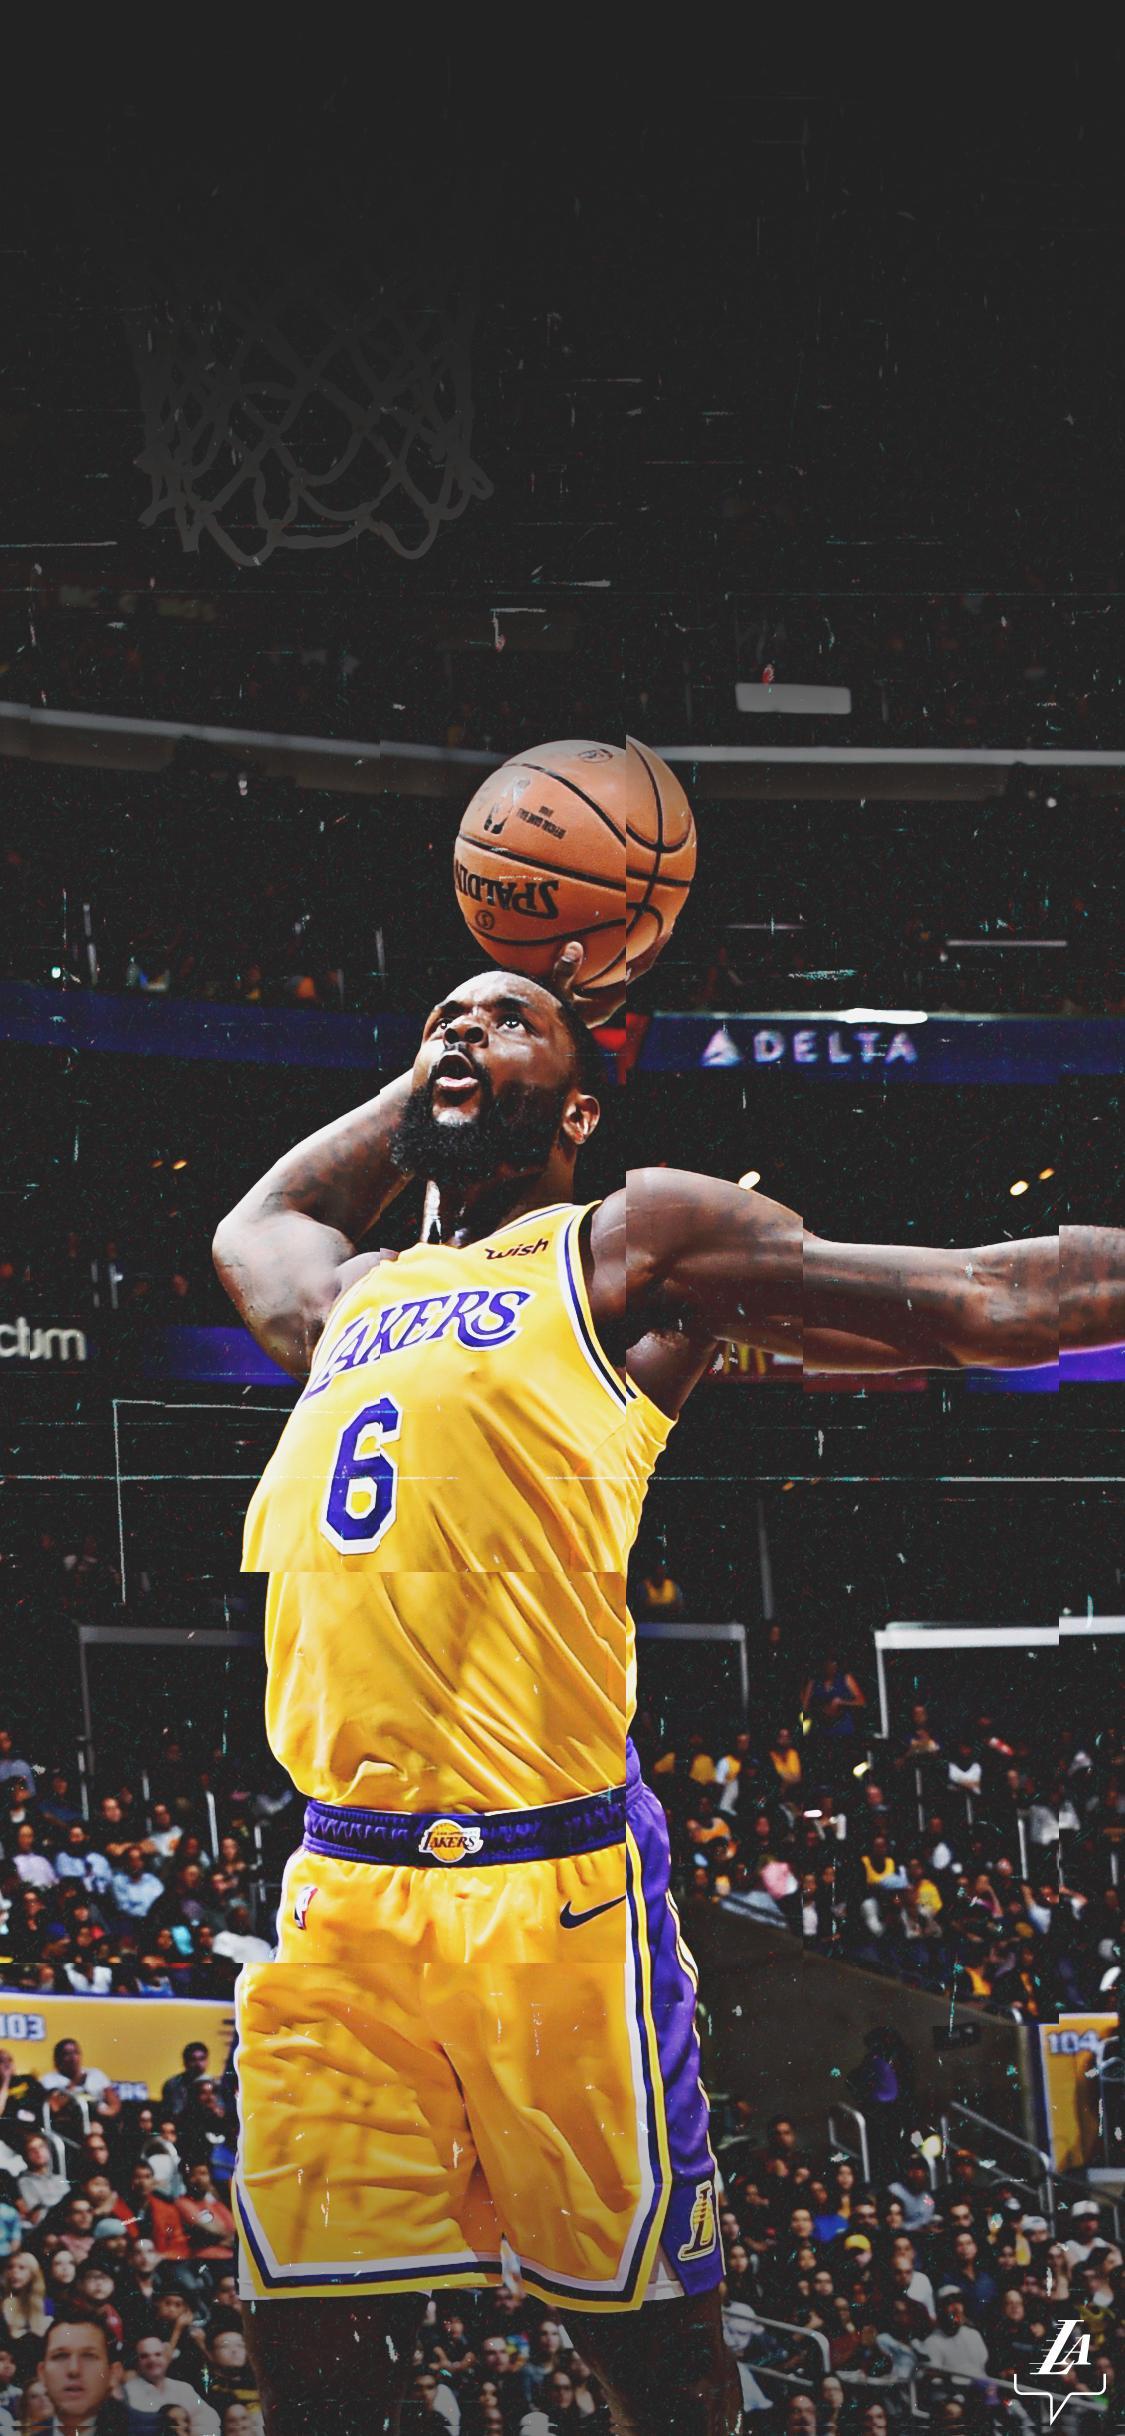 Kobe Bryant Lakers wallpaper